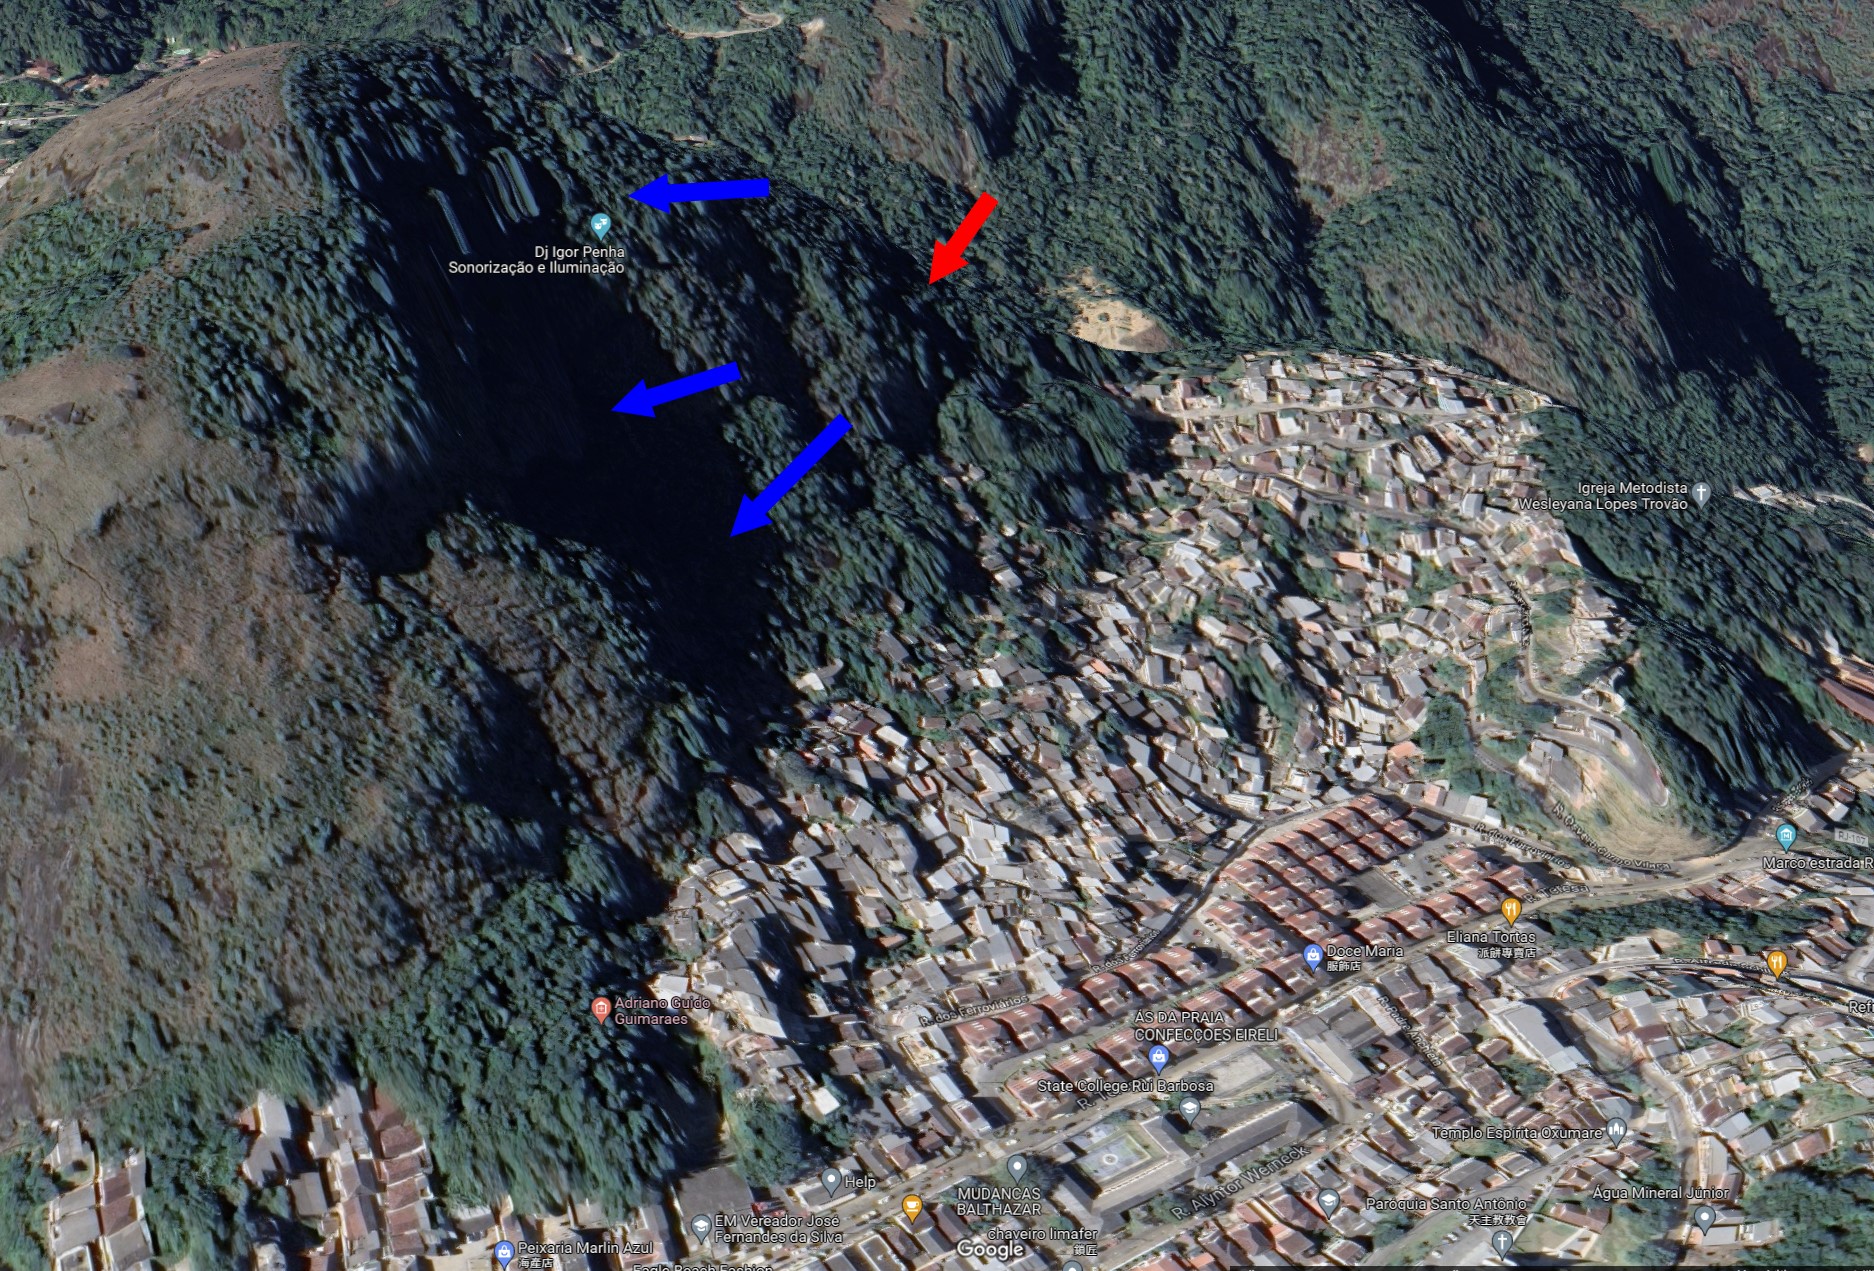 PETROPOLIS Brazil Feb 15-2022 土石流其山壁早就發生過土石滑落，紅色箭頭為此次發生土石流的源頭，藍色箭頭則是指出這早有發生過大型土石滑落的跡象。